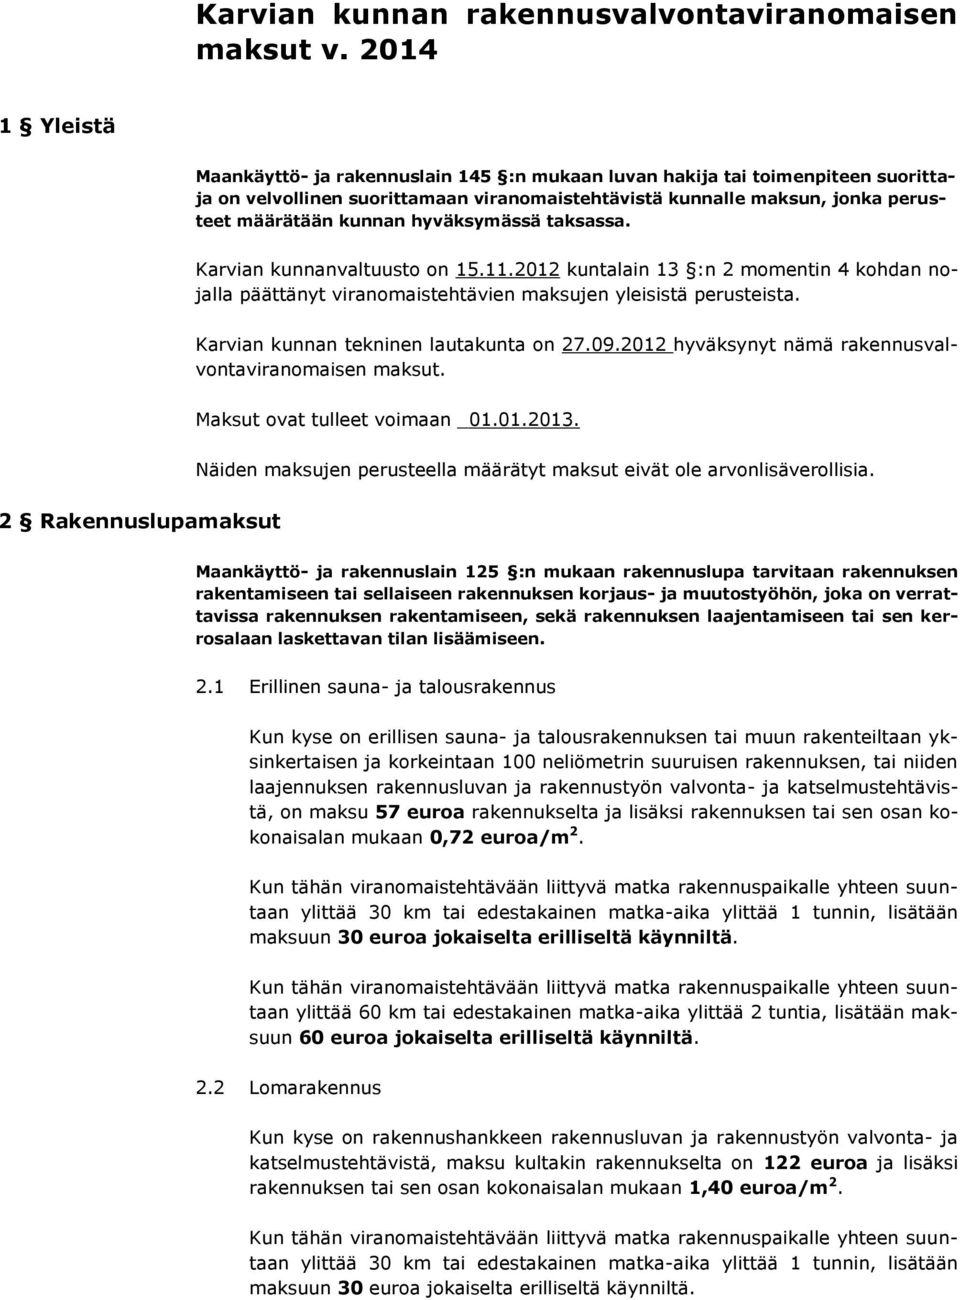 hyväksymässä taksassa. Karvian kunnanvaltuusto on 15.11.2012 kuntalain 13 :n 2 momentin 4 kohdan nojalla päättänyt viranomaistehtävien maksujen yleisistä perusteista.